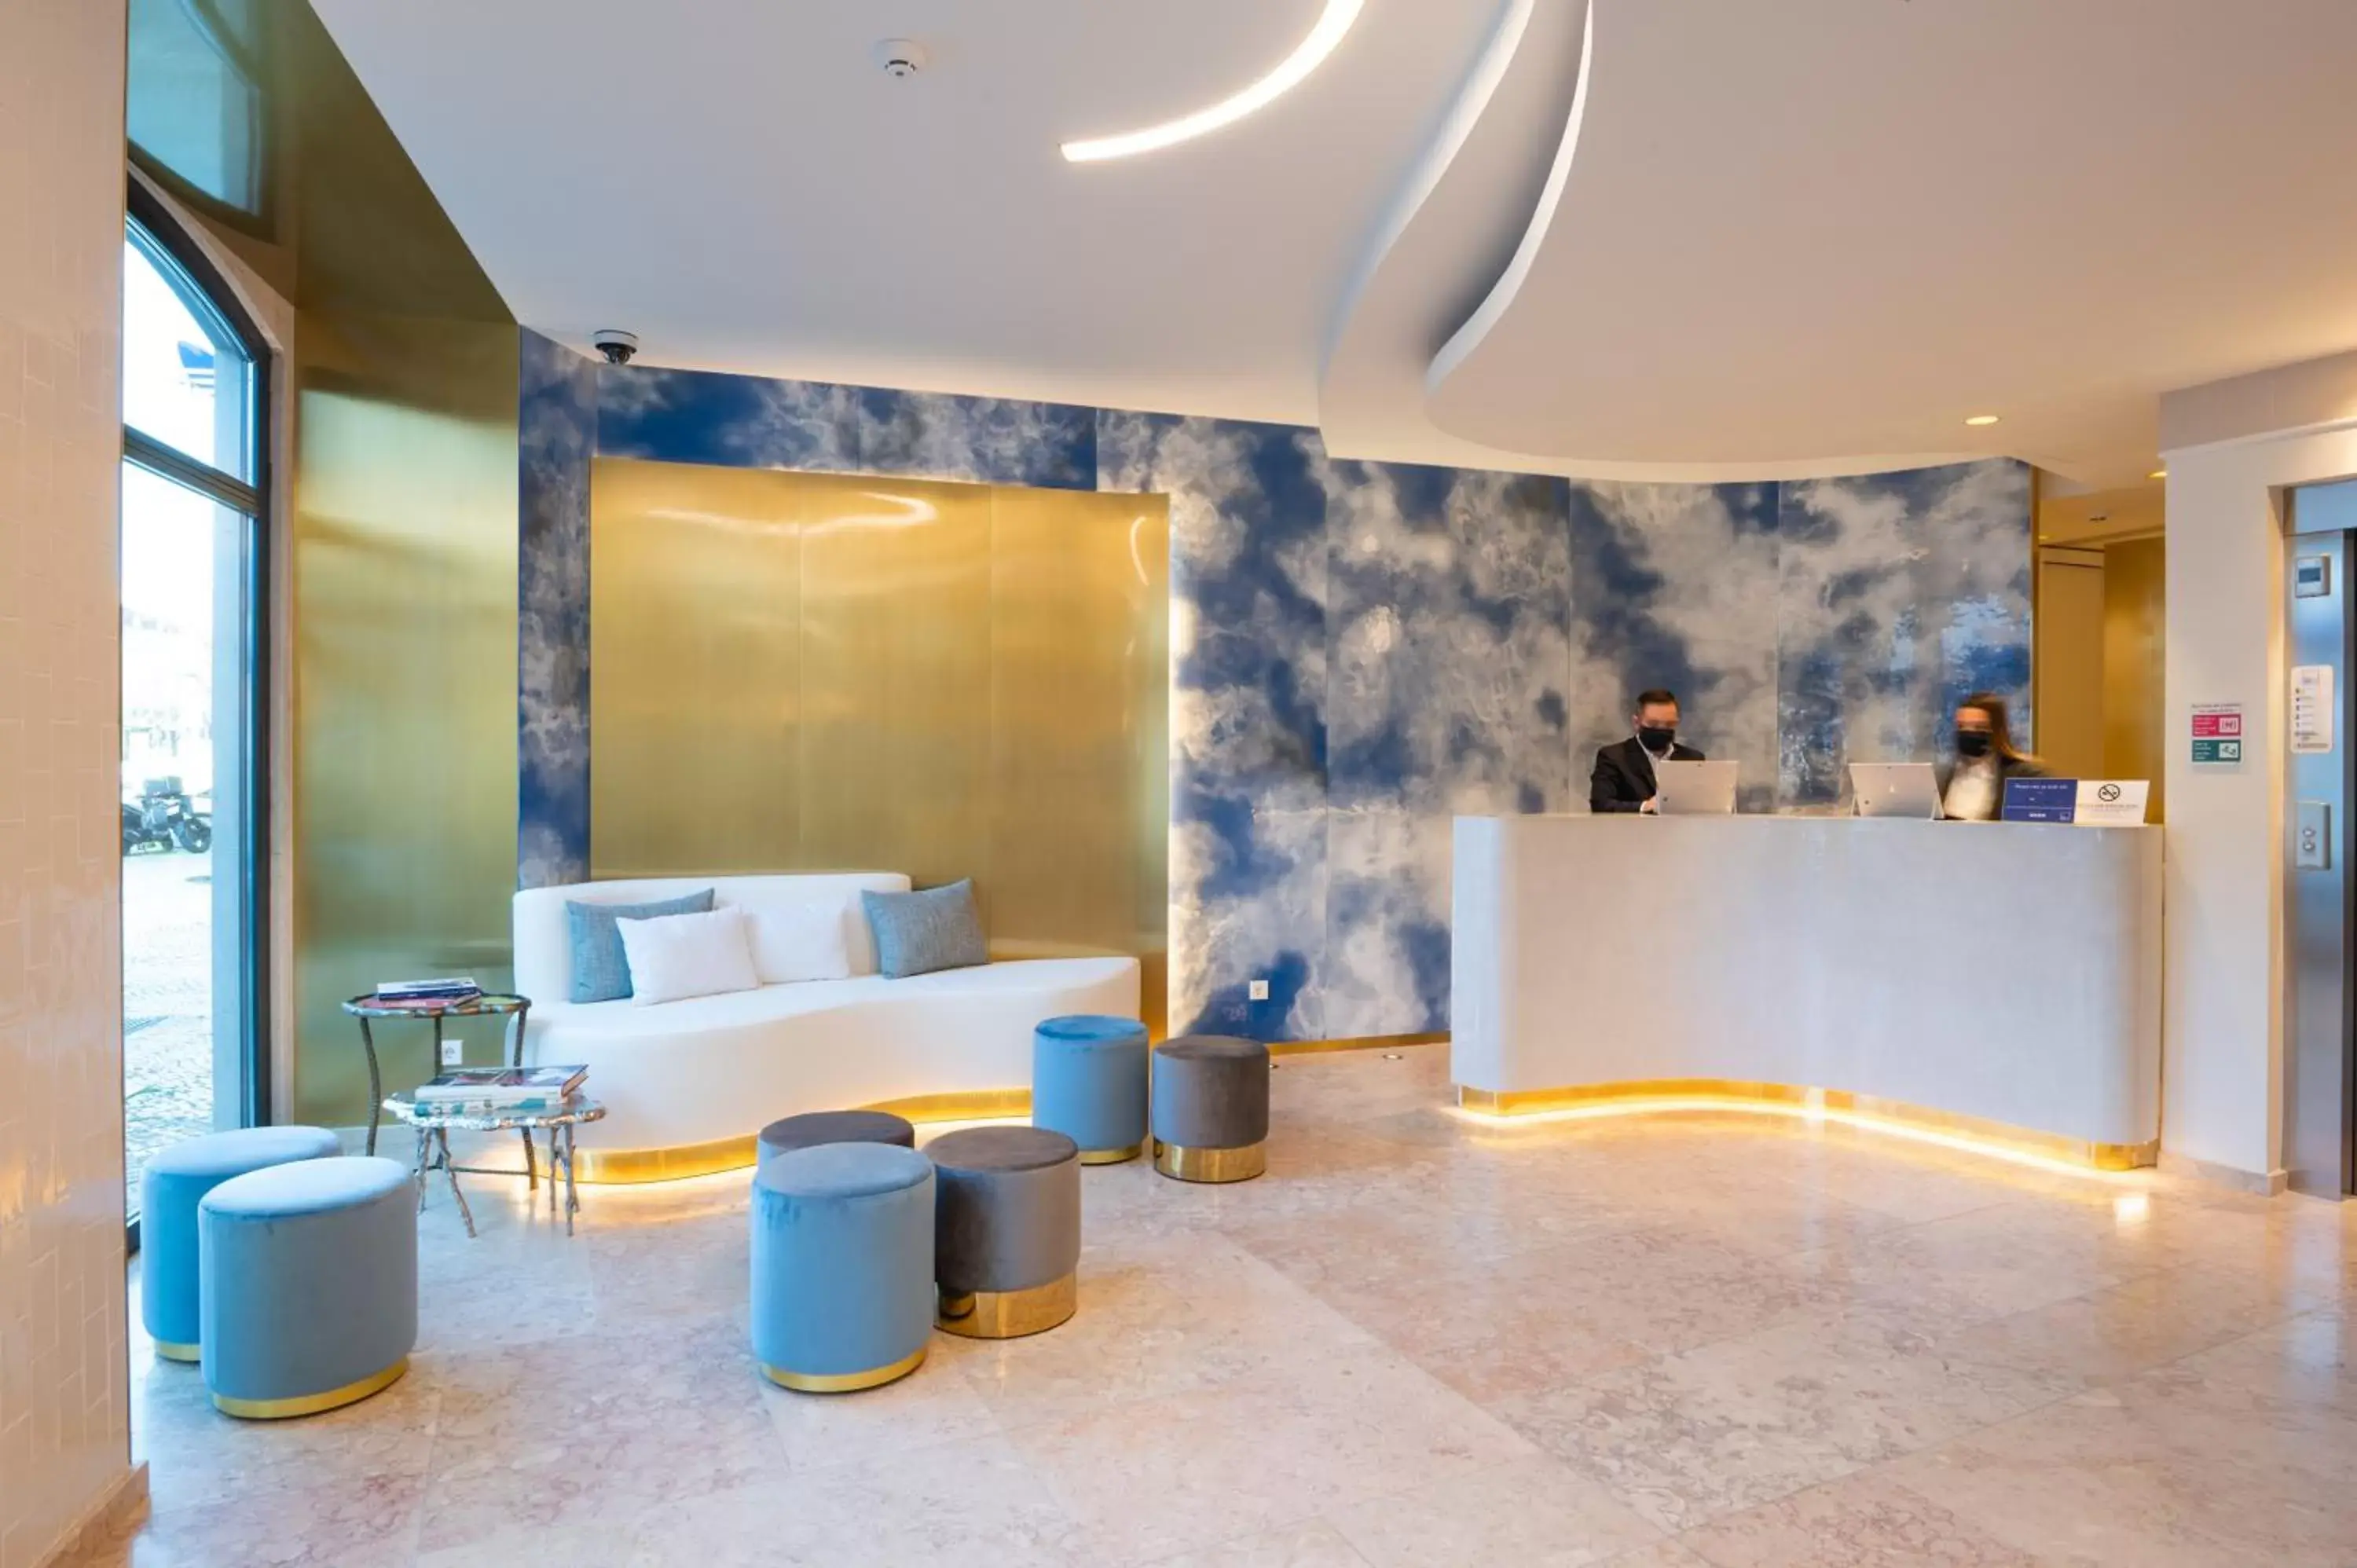 Lobby or reception, Lobby/Reception in Blue Liberdade Hotel